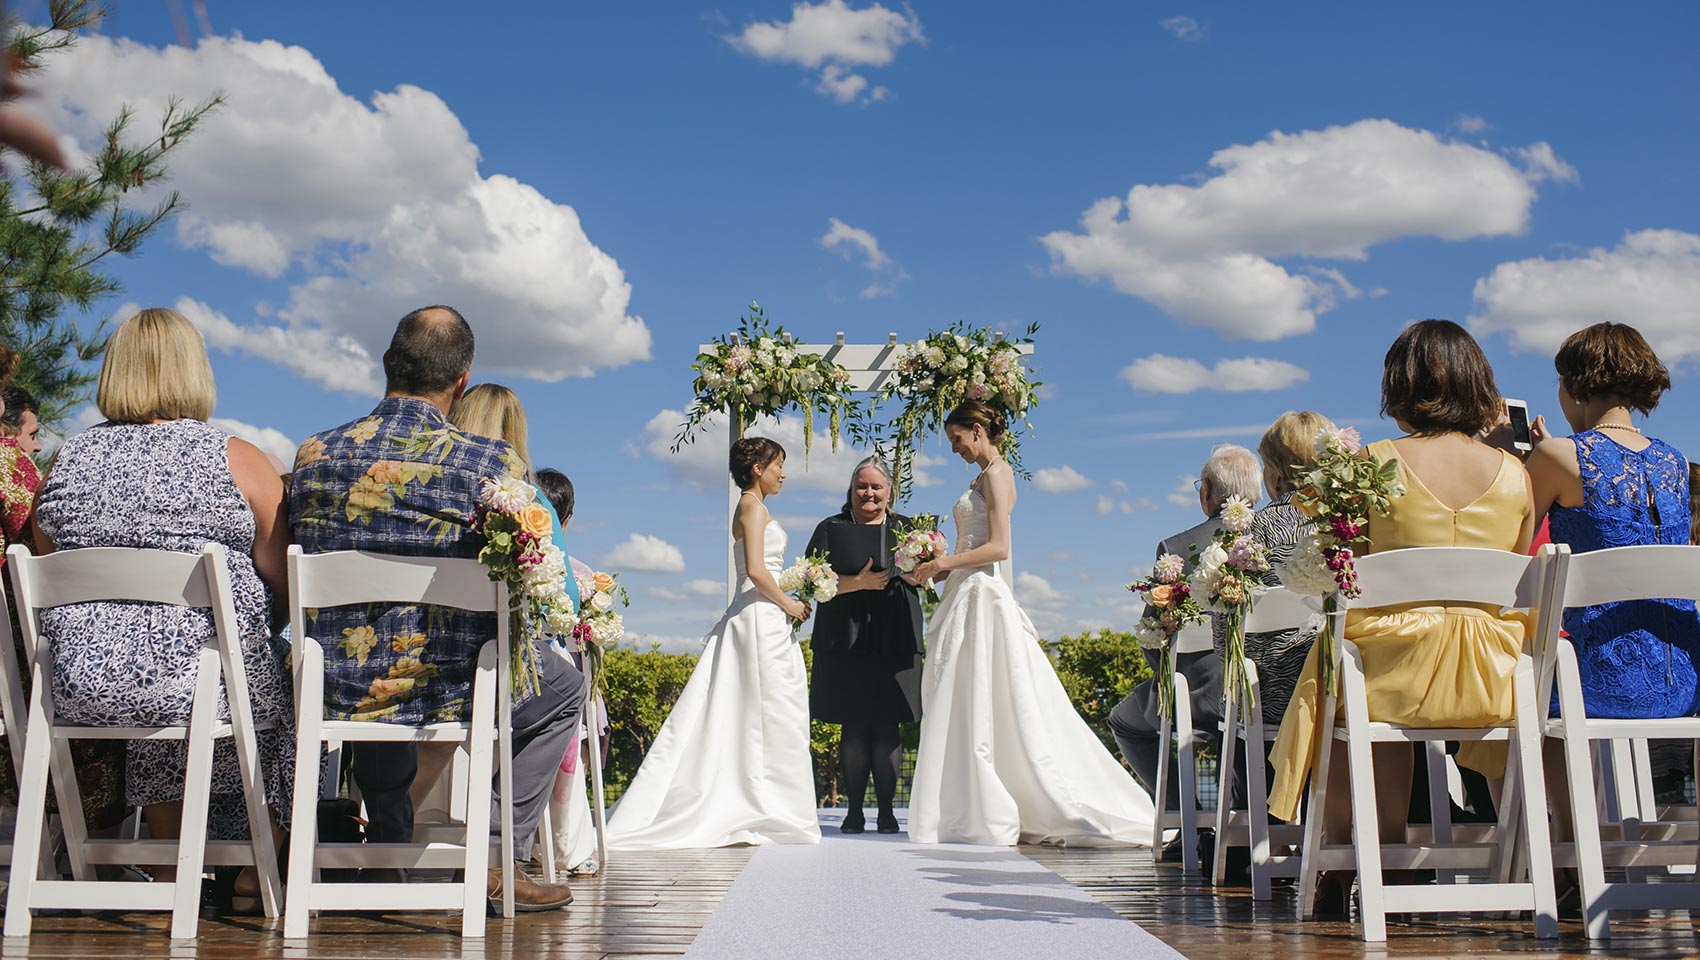 LGBT wedding ceremony at outdoor Portland wedding venue